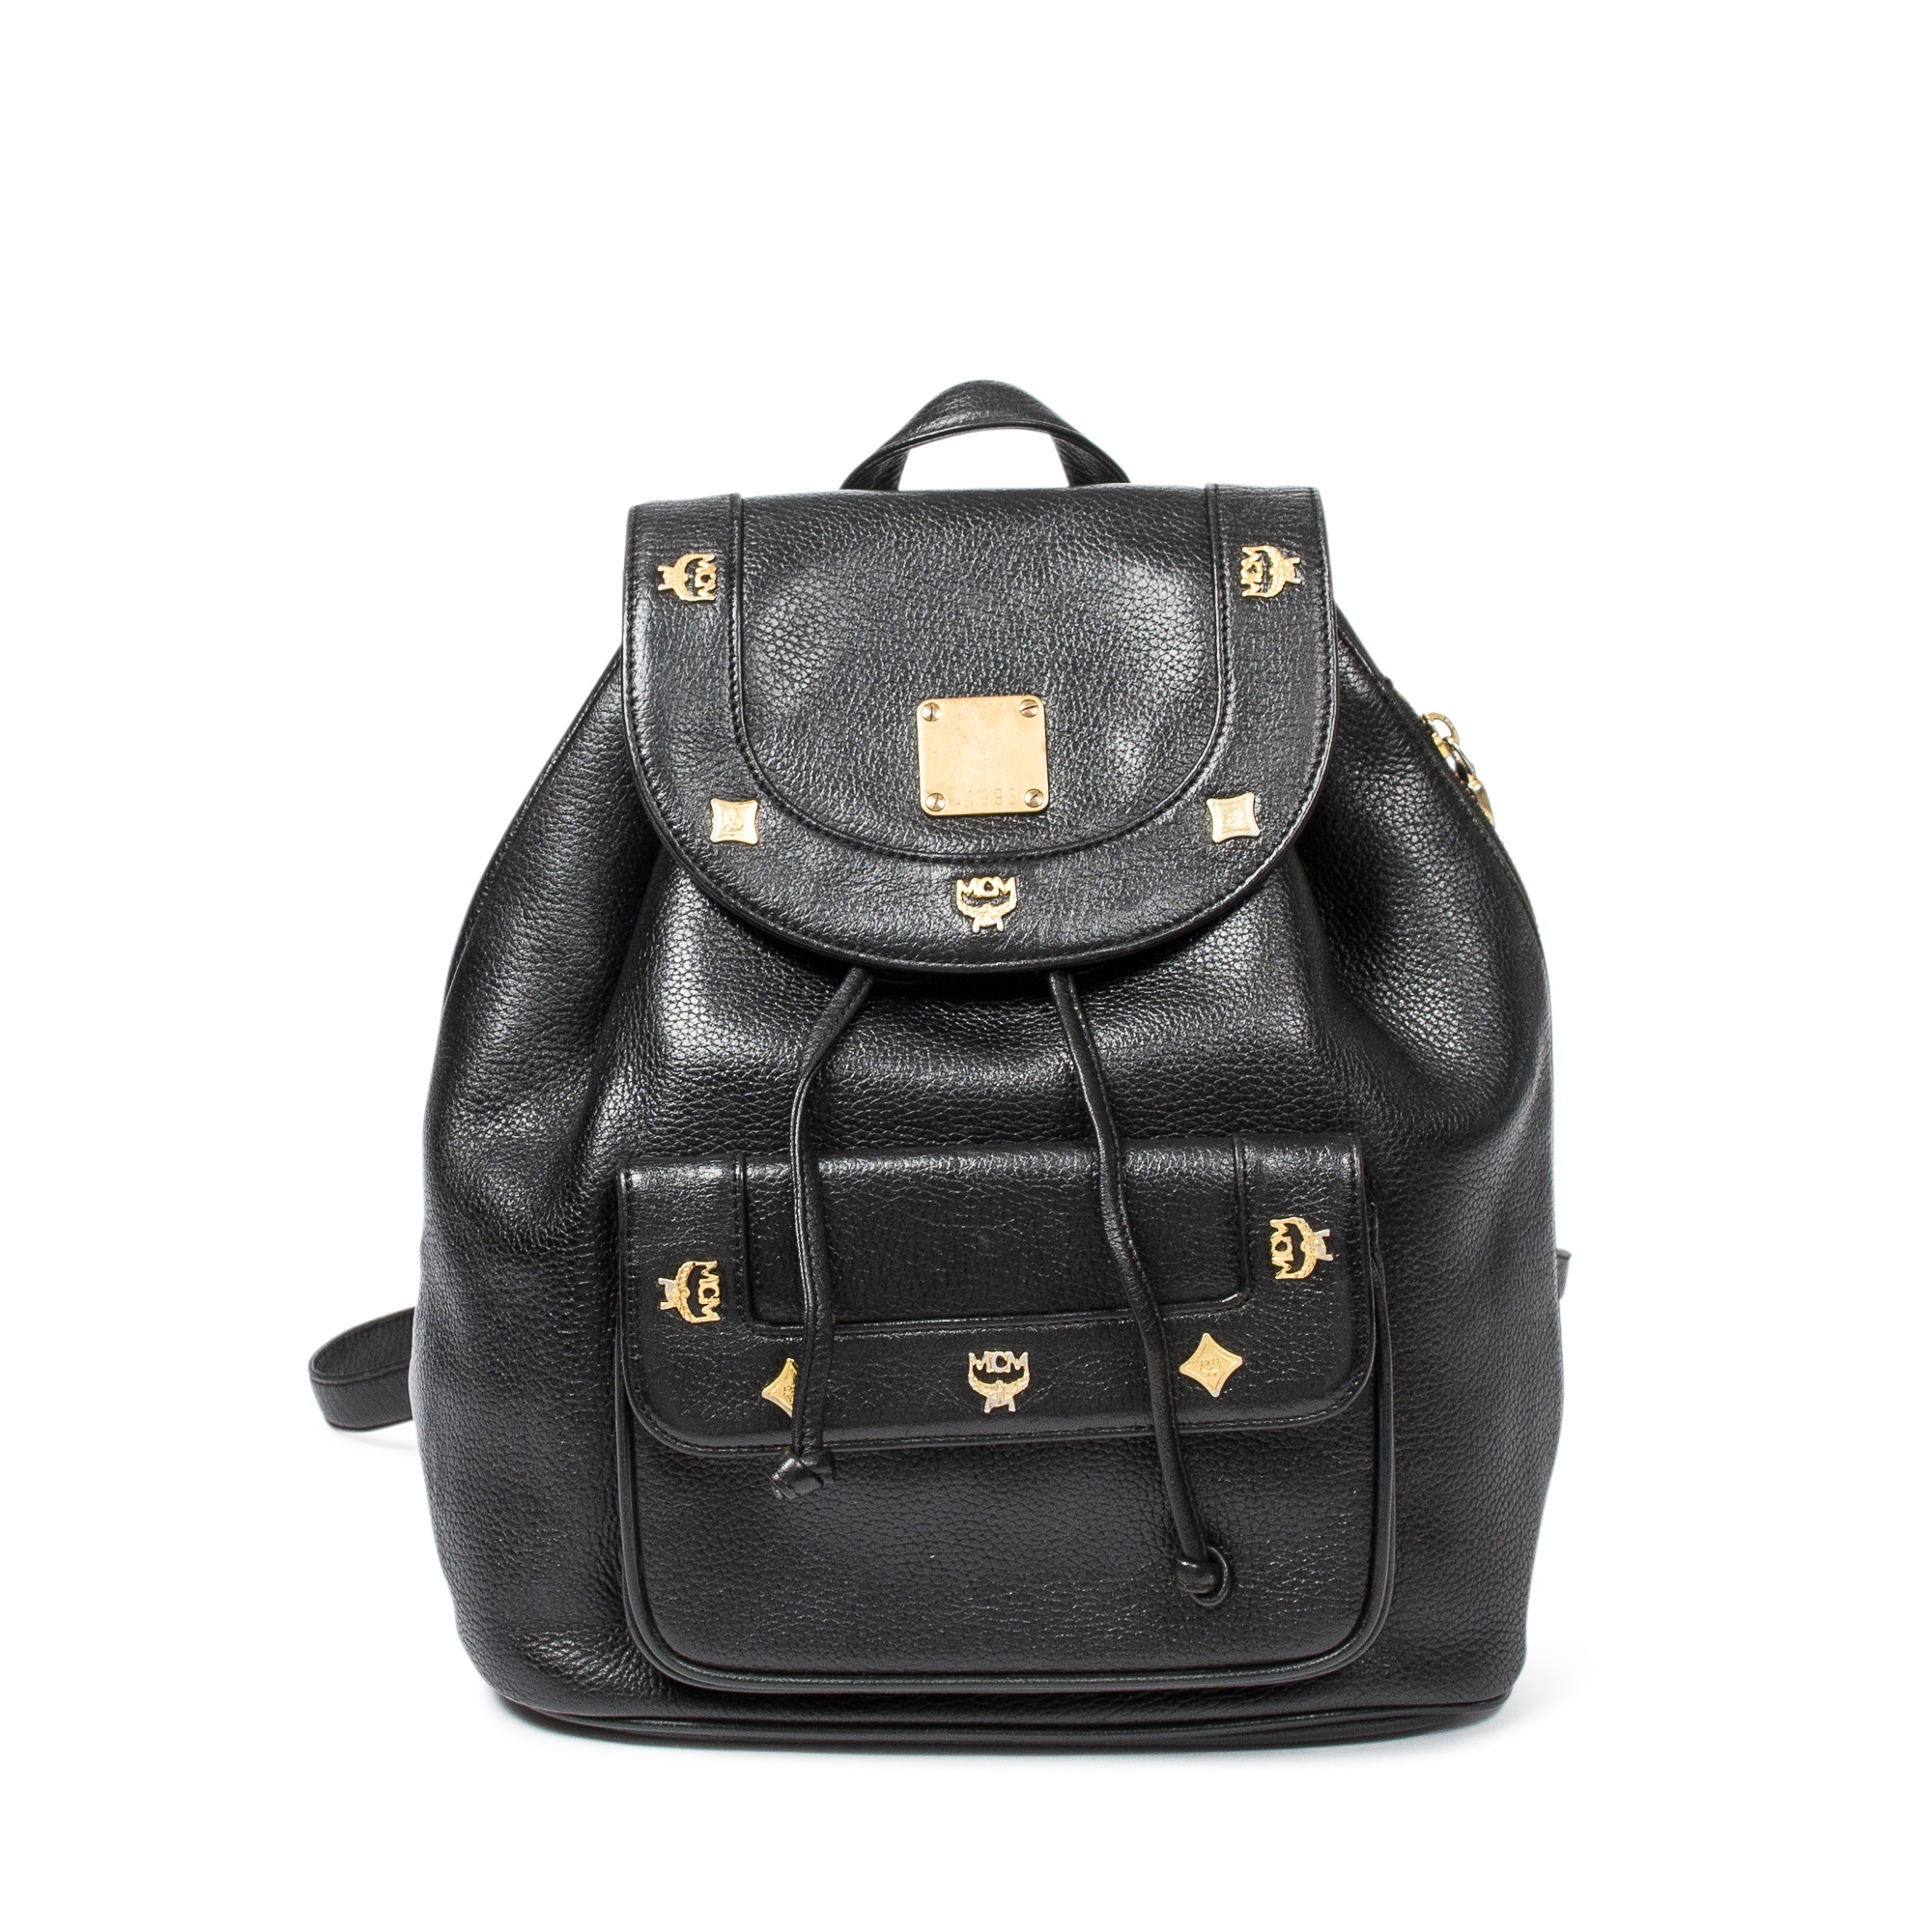 Lot 318 - MCM Black Leather Backpack